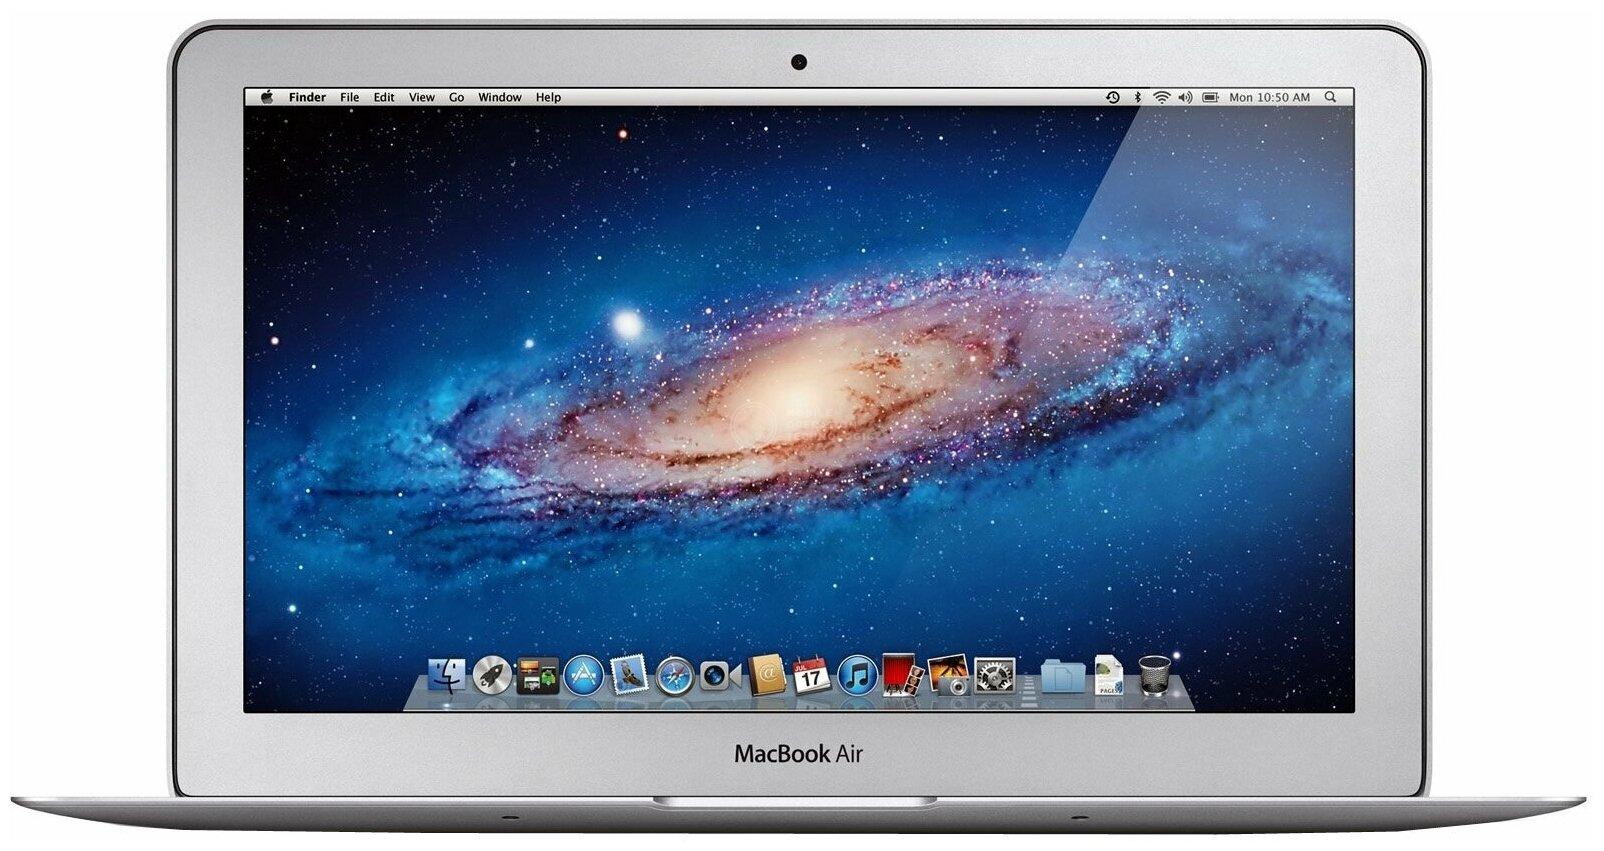 MacBook Air 11 Mid 2013 MF067